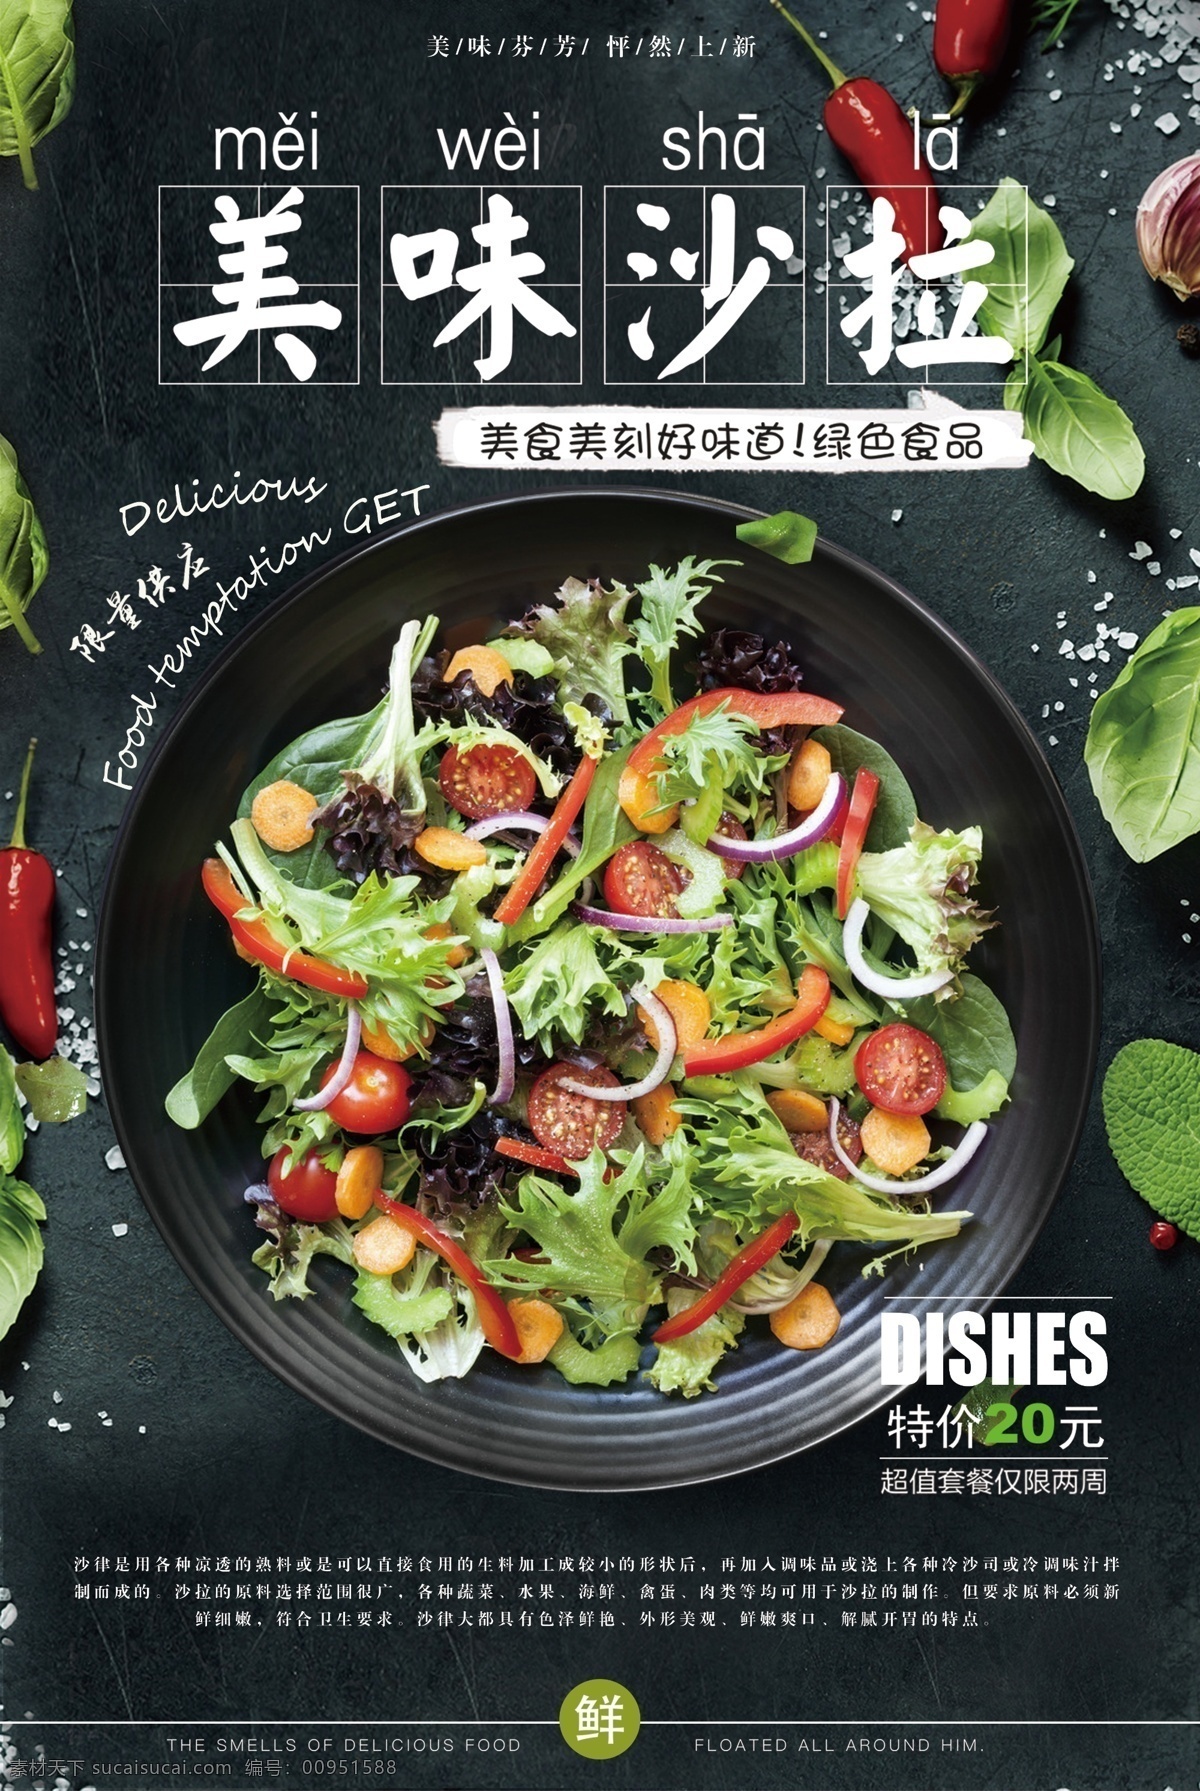 沙拉 美食 食 材 活动 宣传海报 食材 宣传 海报 餐饮美食 类